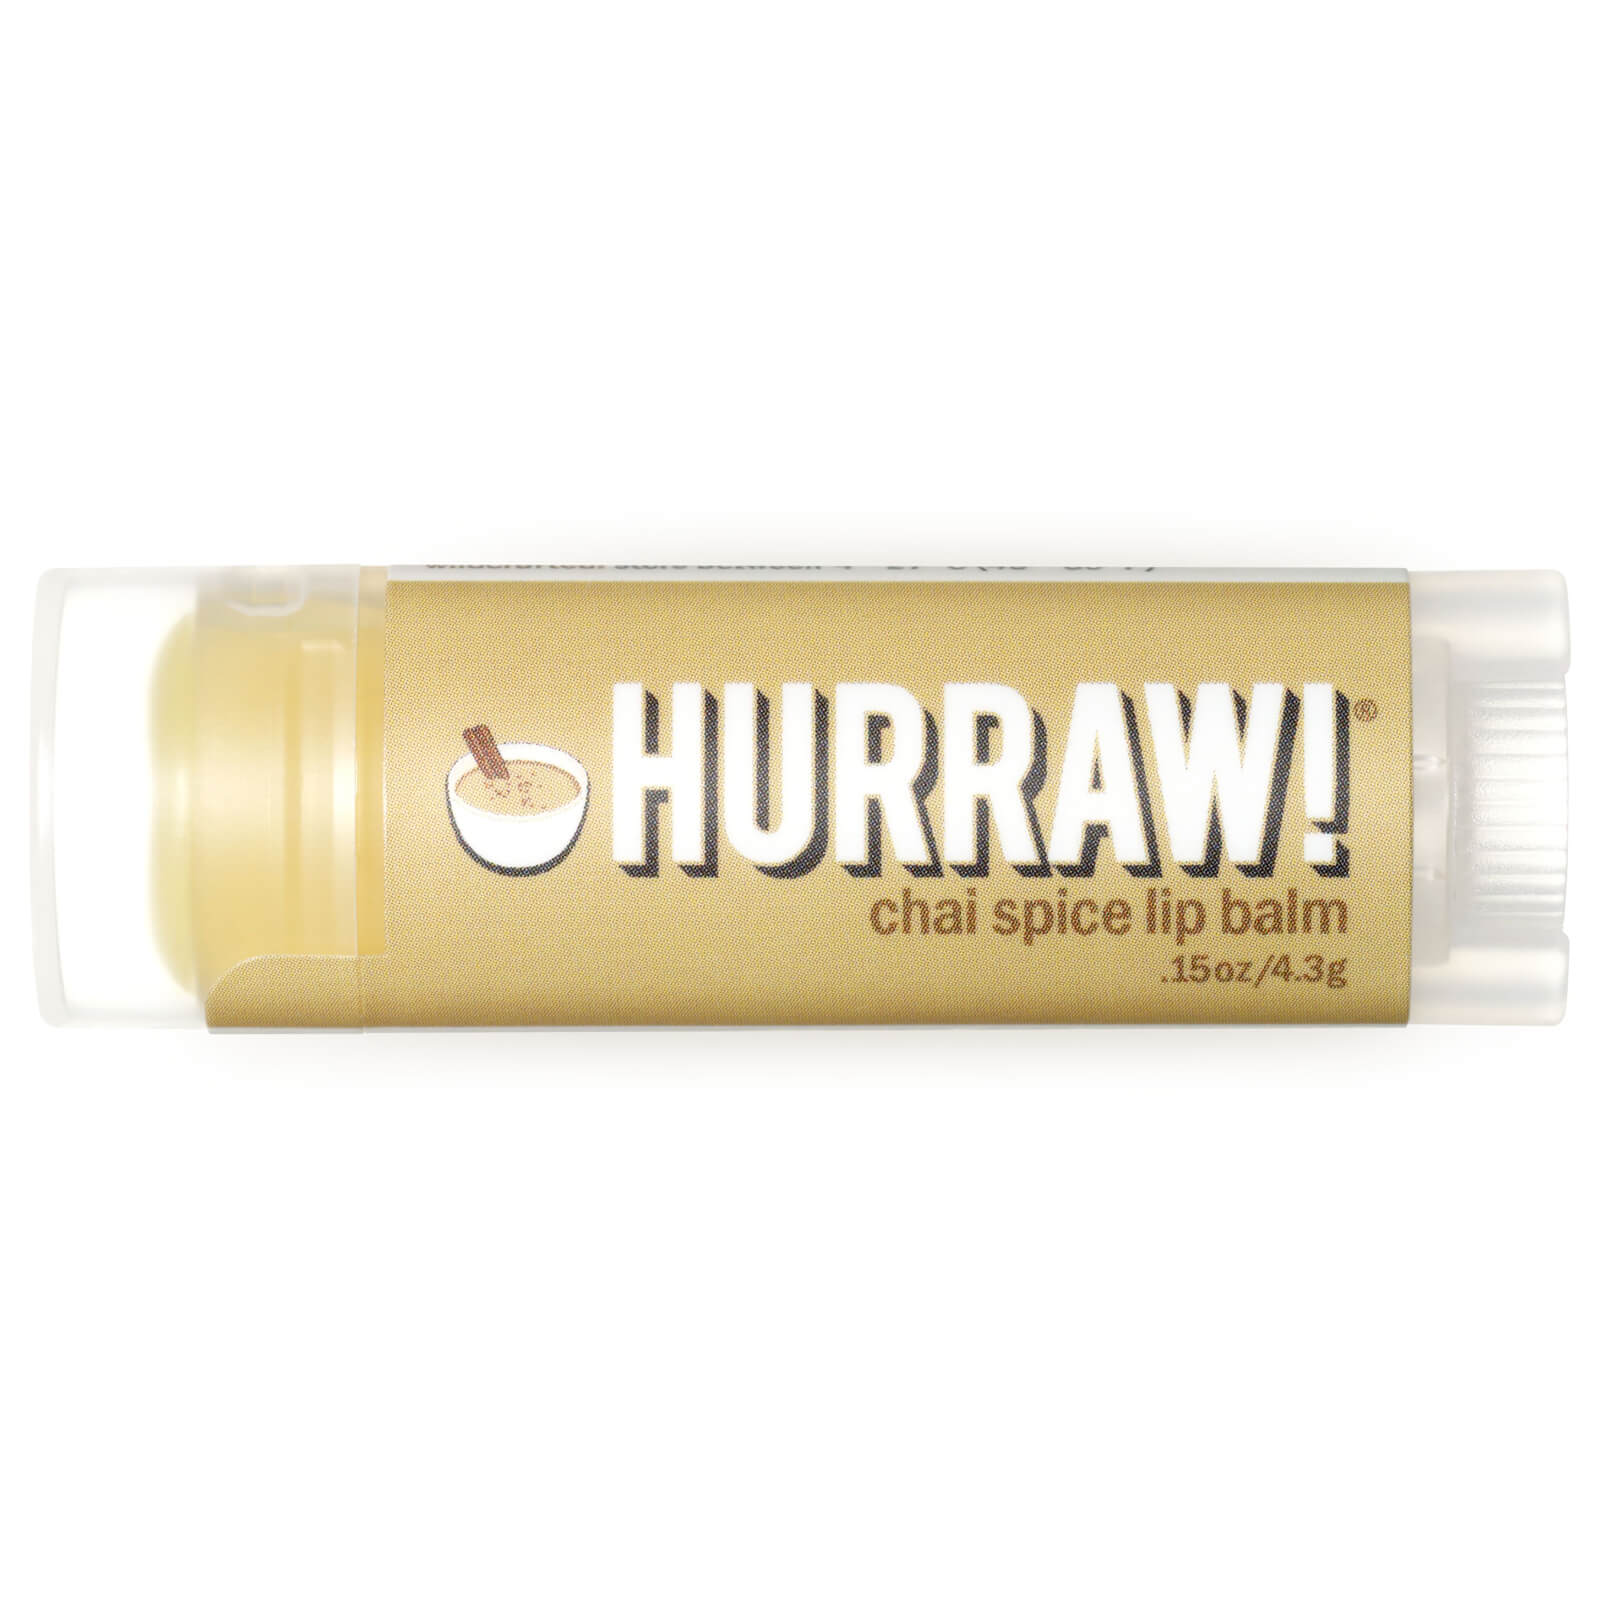 Hurraw! Chai Spice Lip Balm 4.3g